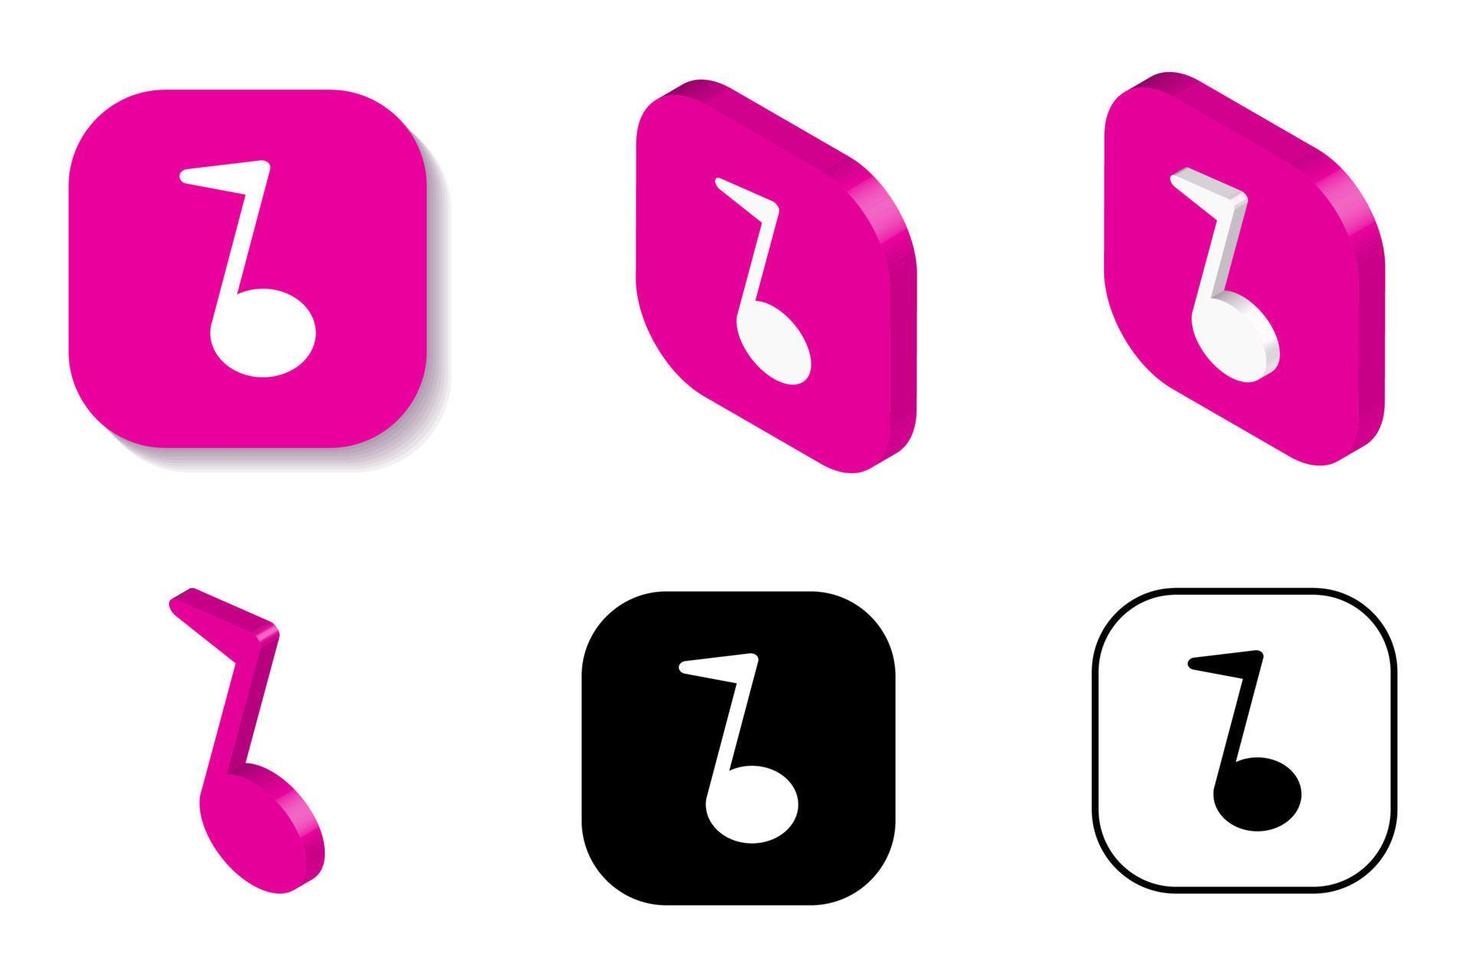 isométrico, ícone da música de renderização em 3d, nota sonora nas cores branca e roxa. apresentação do logotipo, projeção da isometria do símbolo da nota da melodia. vetor